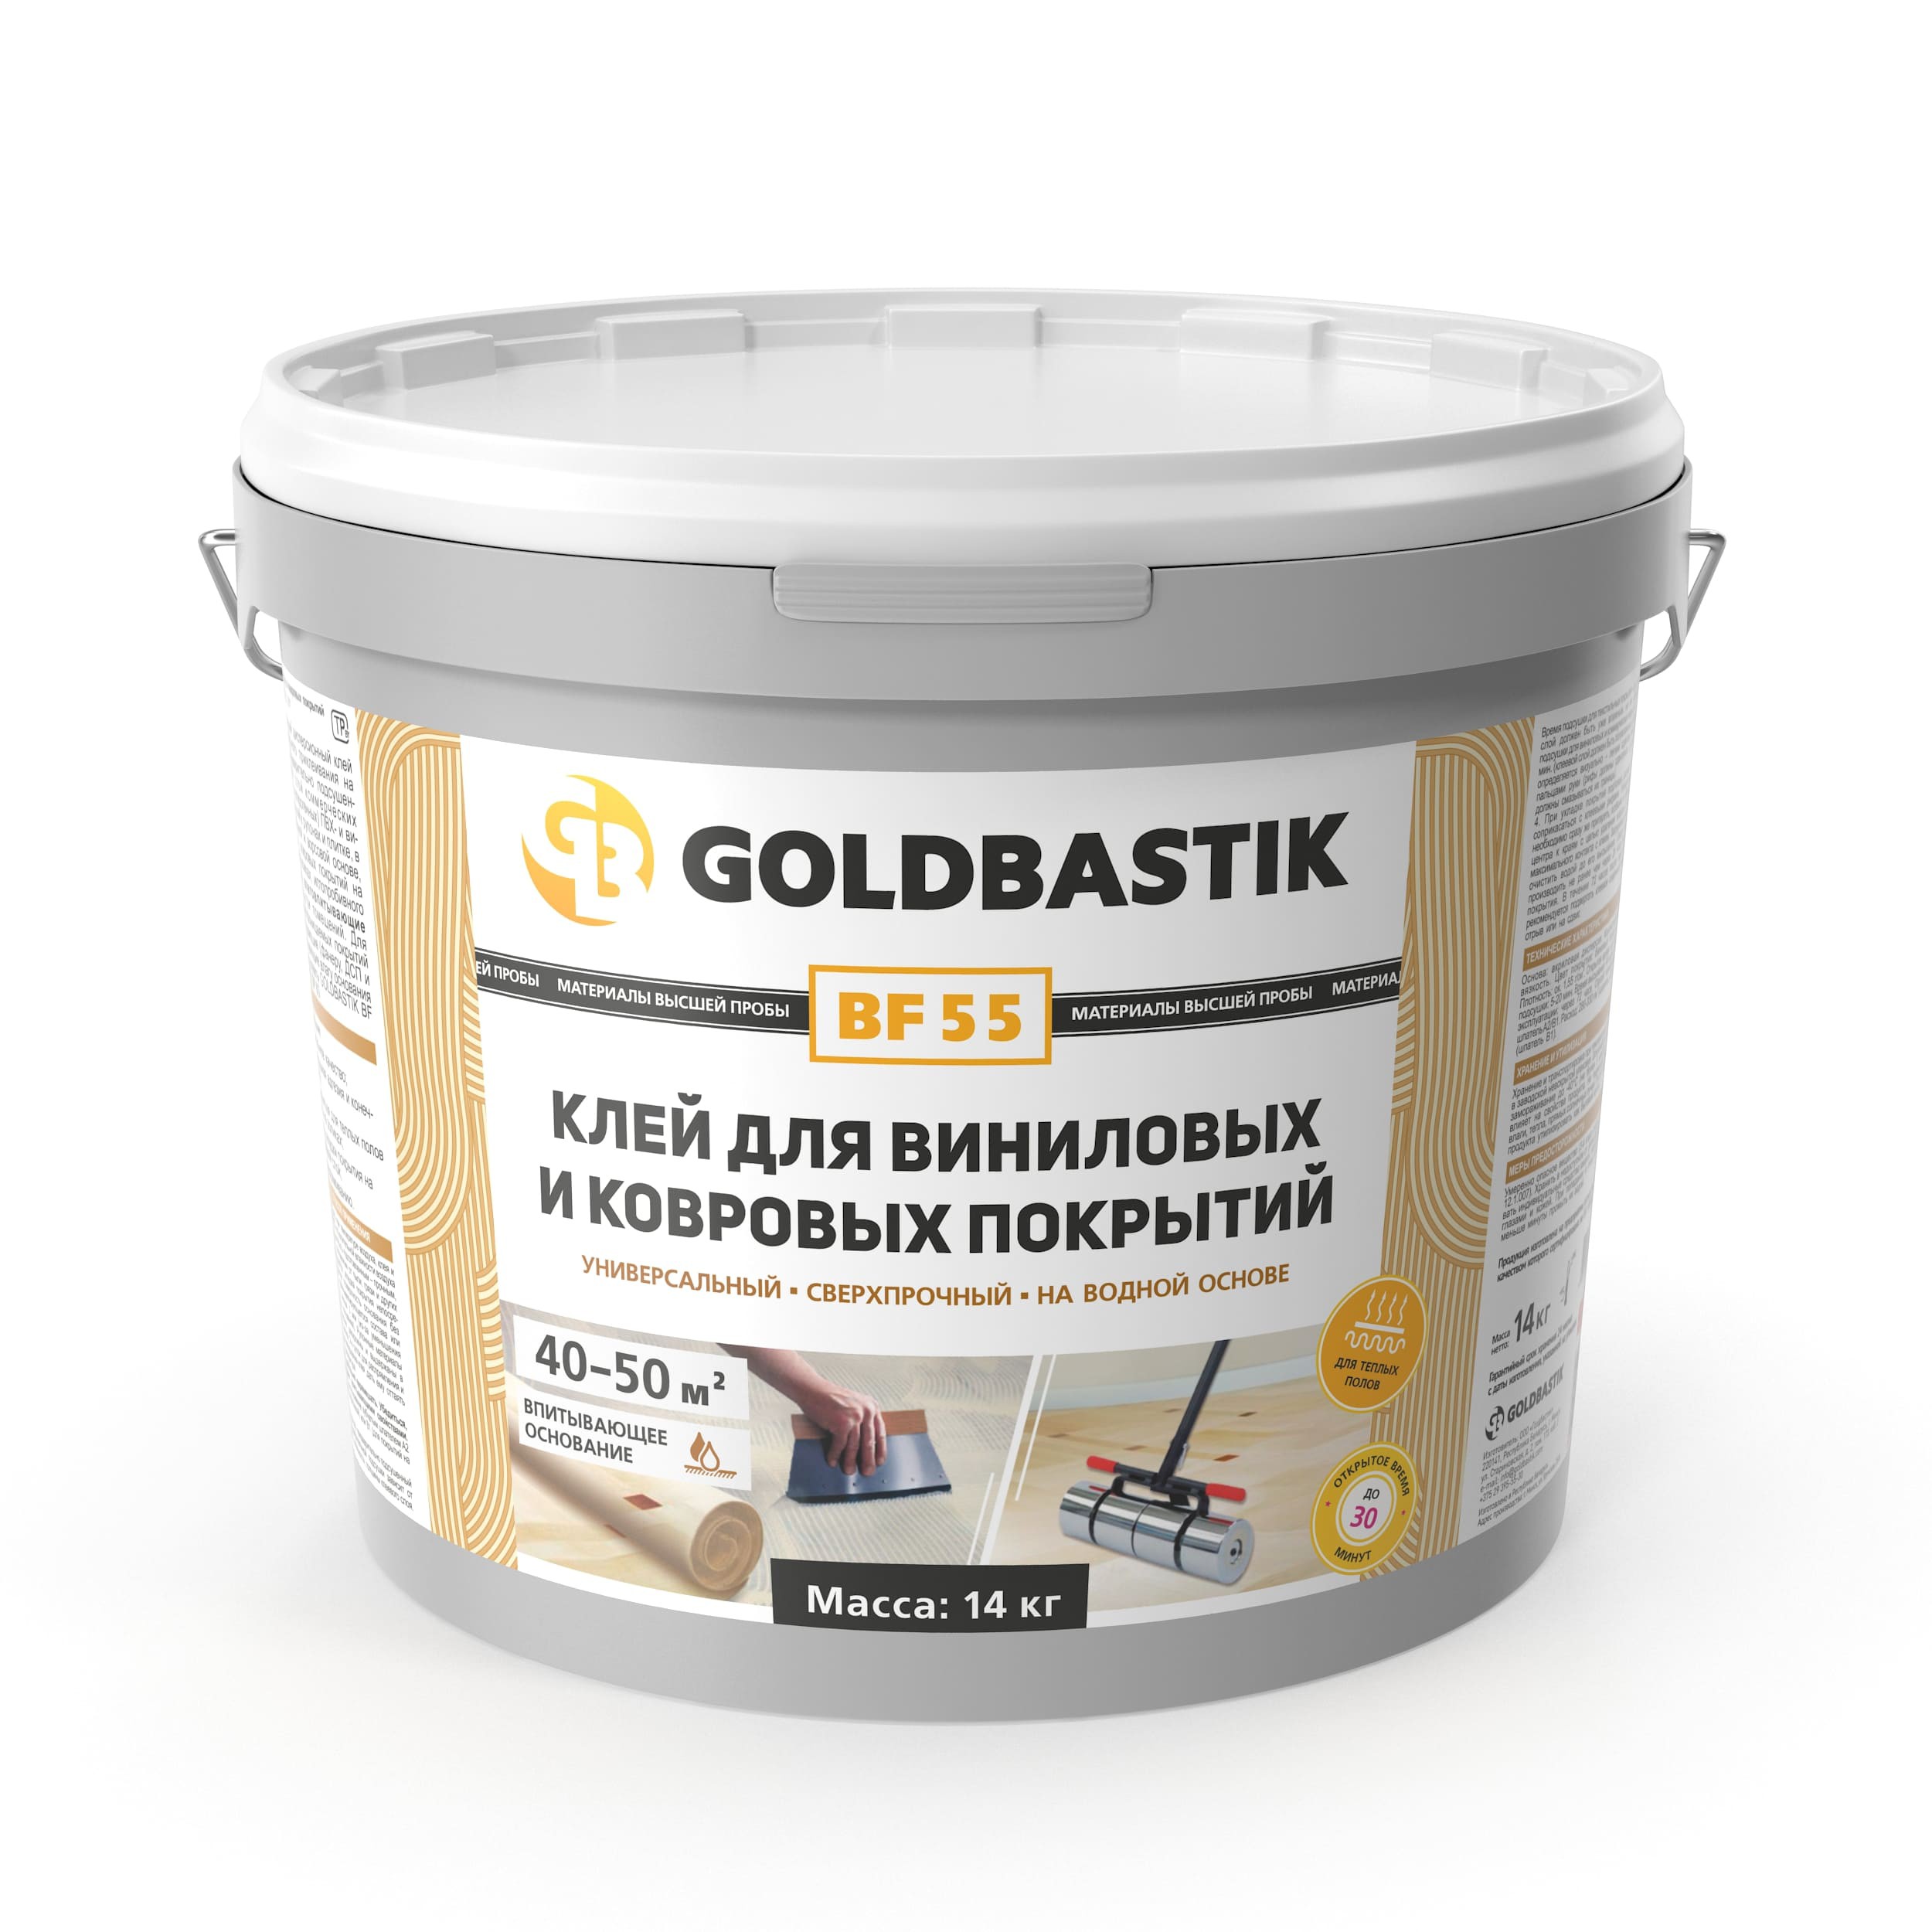 Клей для виниловых и ковровых покрытий GOLDBASTIK BF 55 (7 кг.) купить в Минске